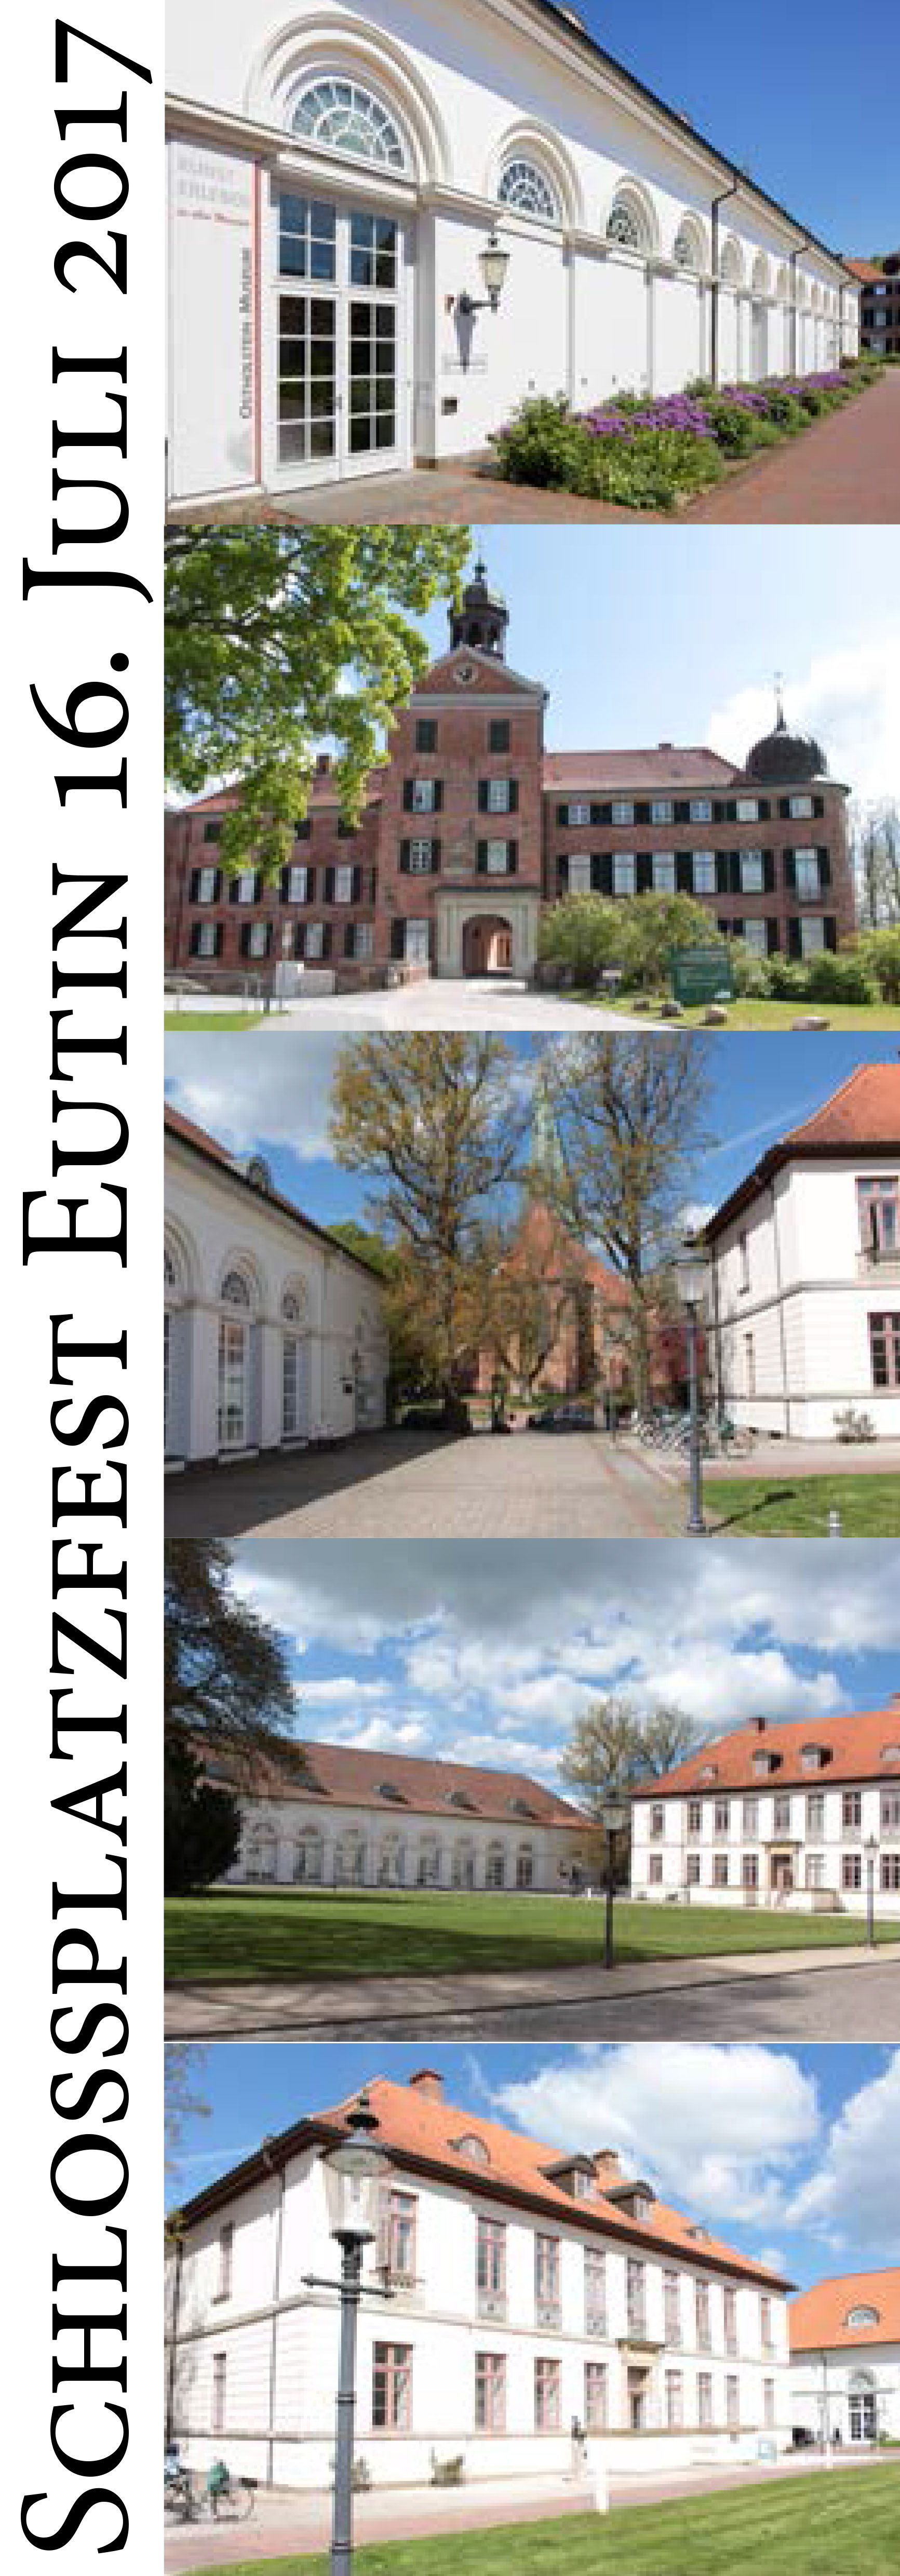 Flyer zum Eutiner Schlossplatzfest von 2017, gestaltet von allen fünf am Eutiner Schlossplatz tätigen Kultureinrichtungen.